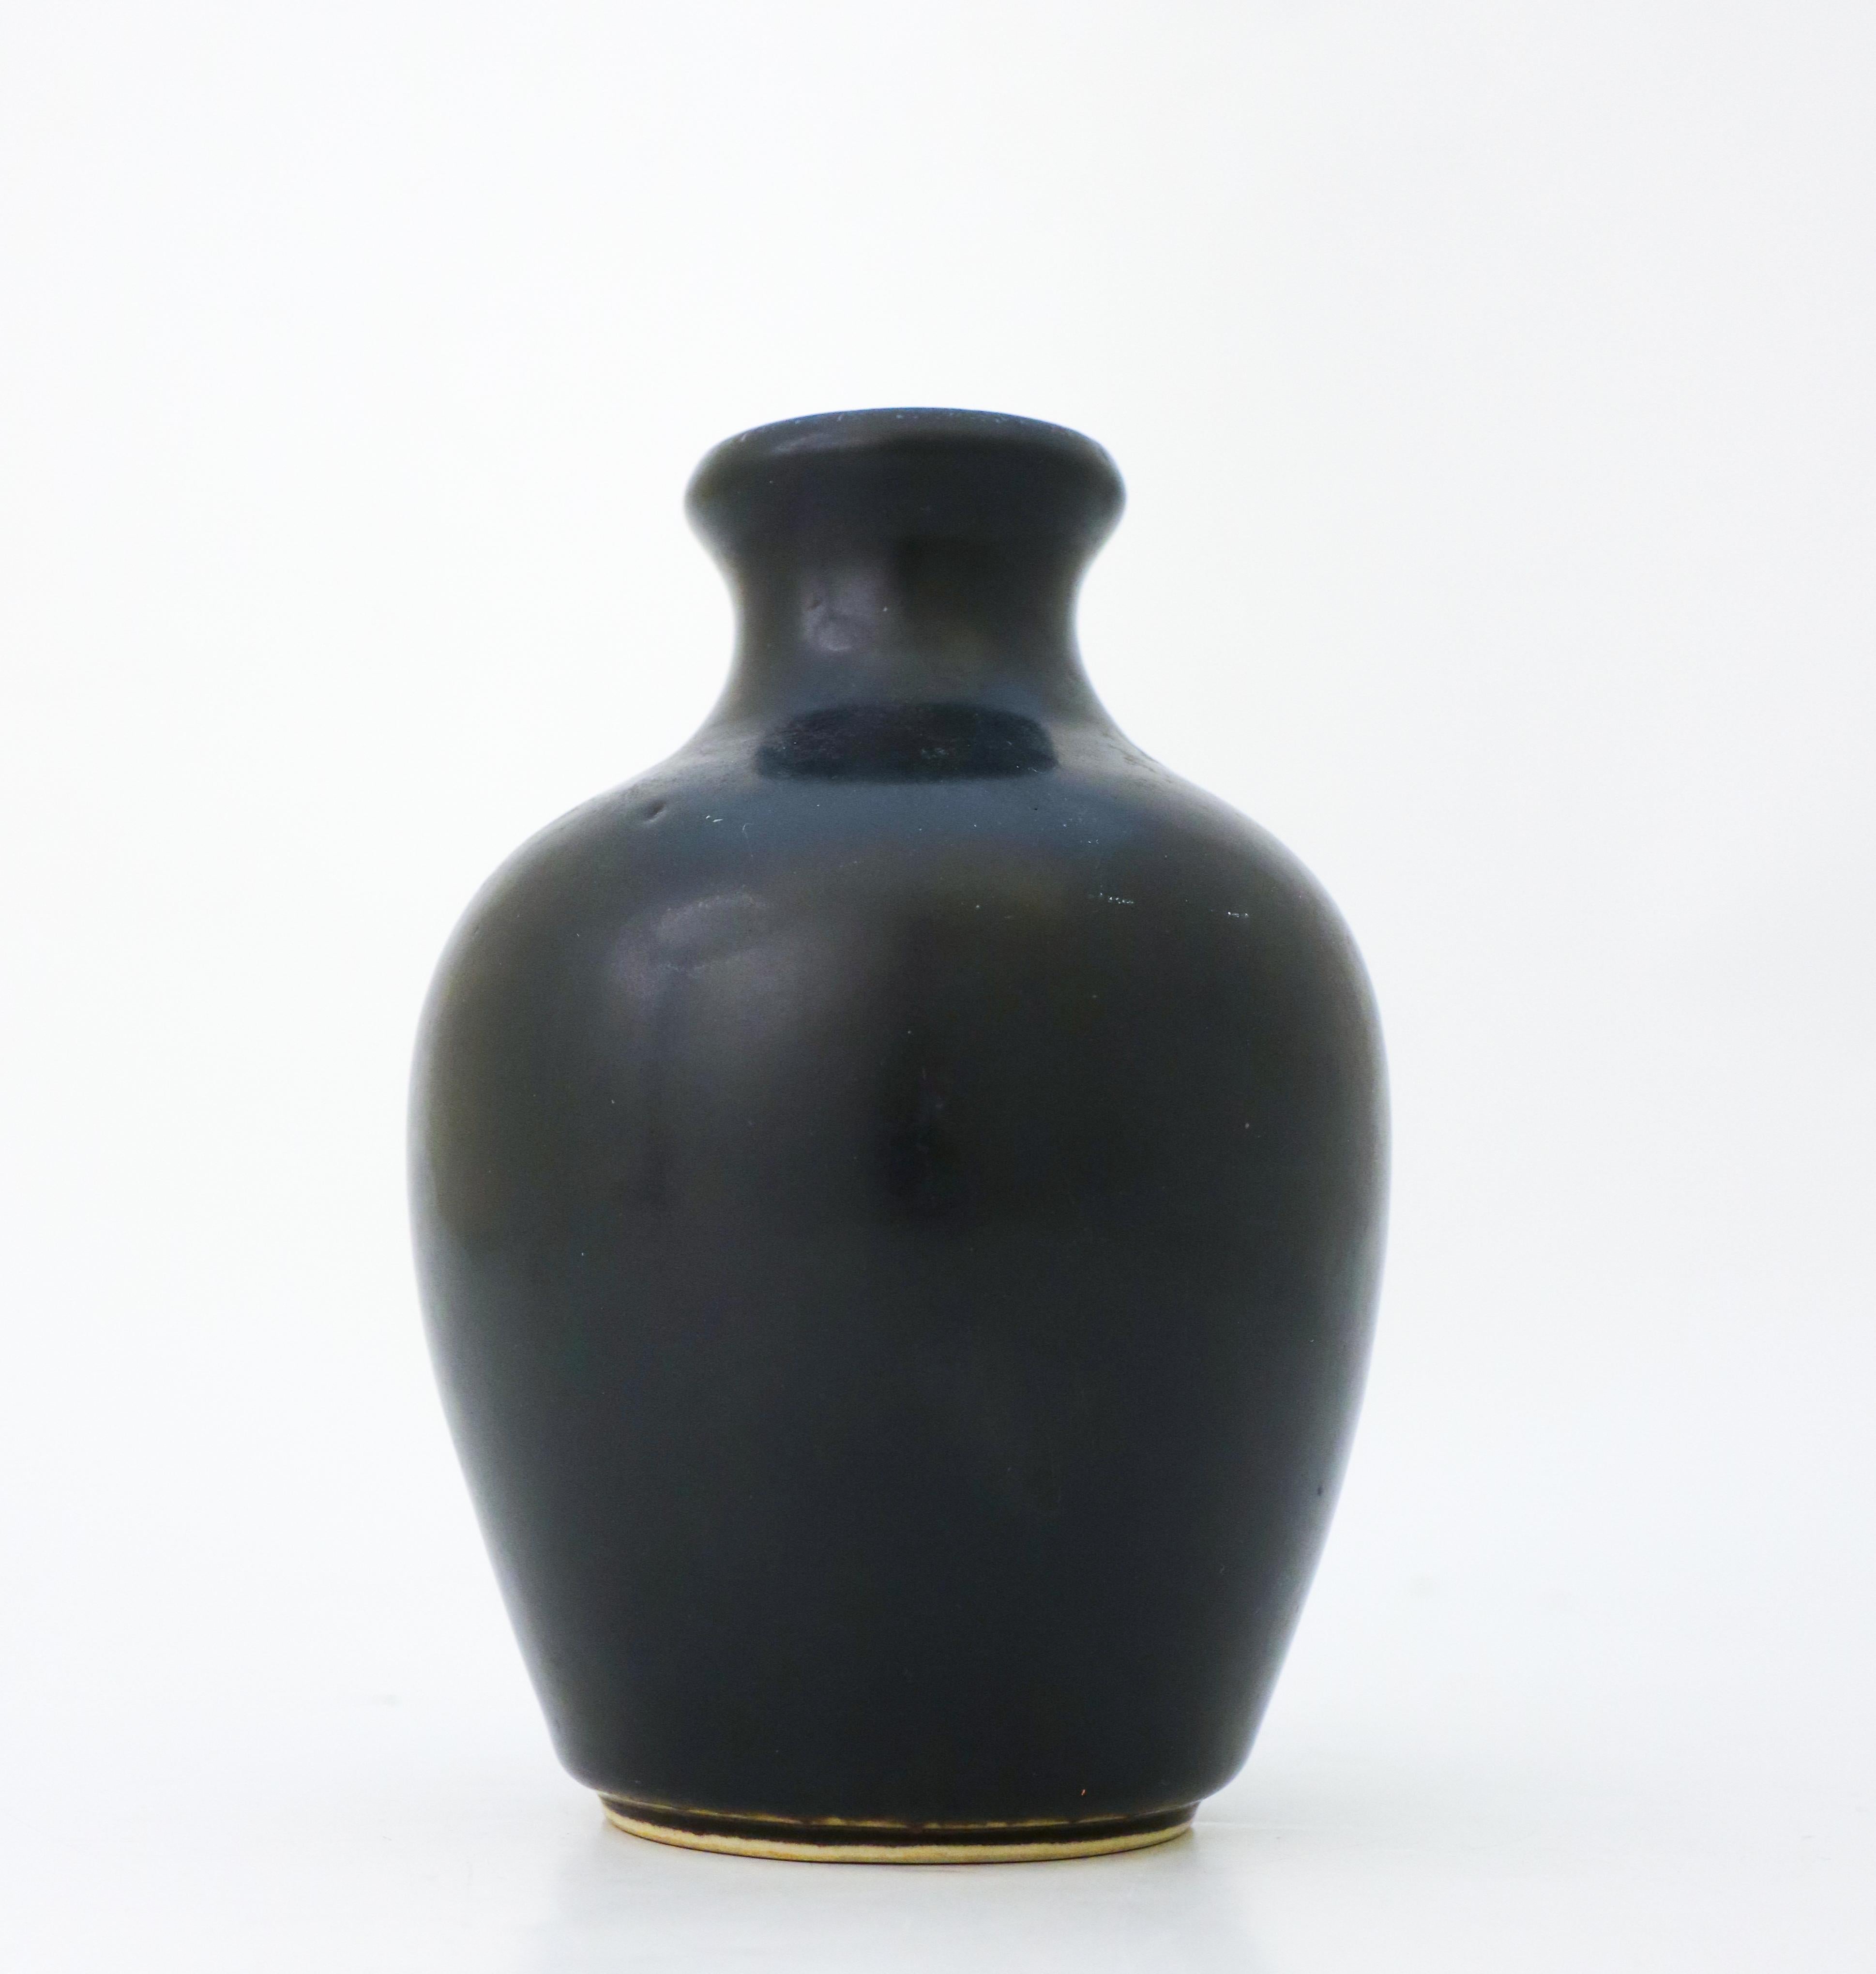 Scandinavian Modern Black Vase - Carl-Harry Stålhane - Rörstrand Atelier - Mid 20th Century Modern For Sale